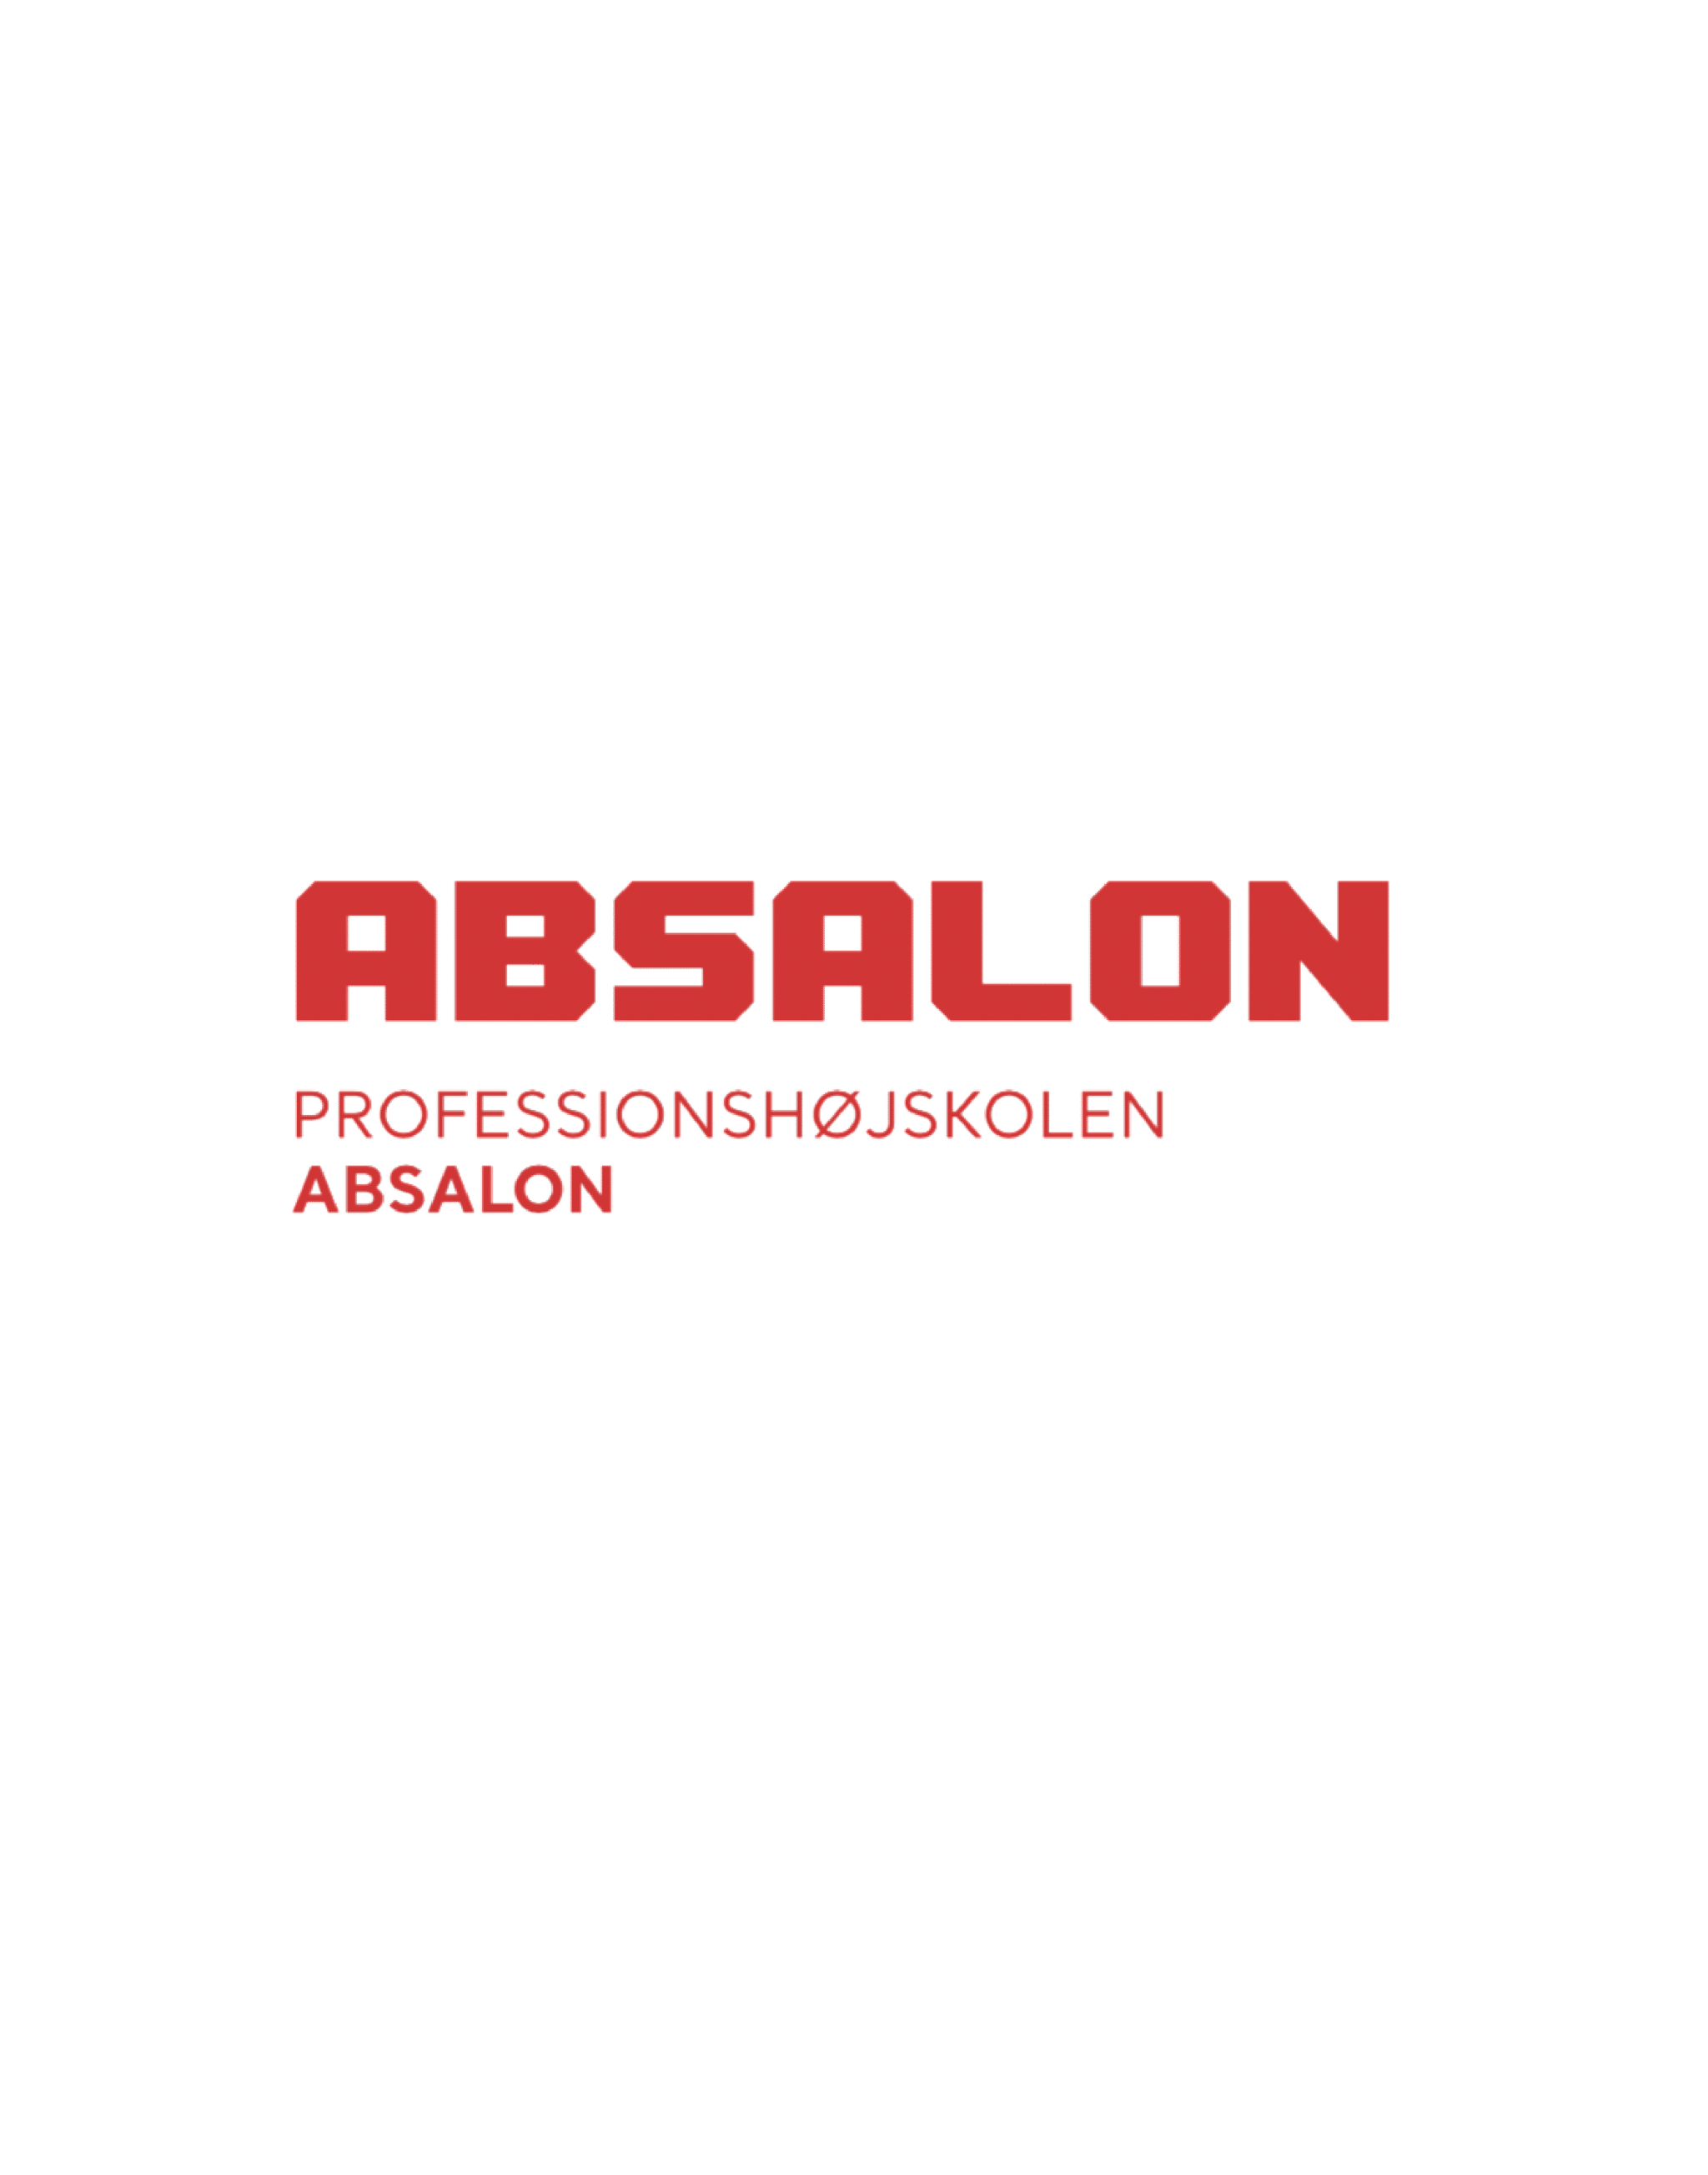 Absalon logo